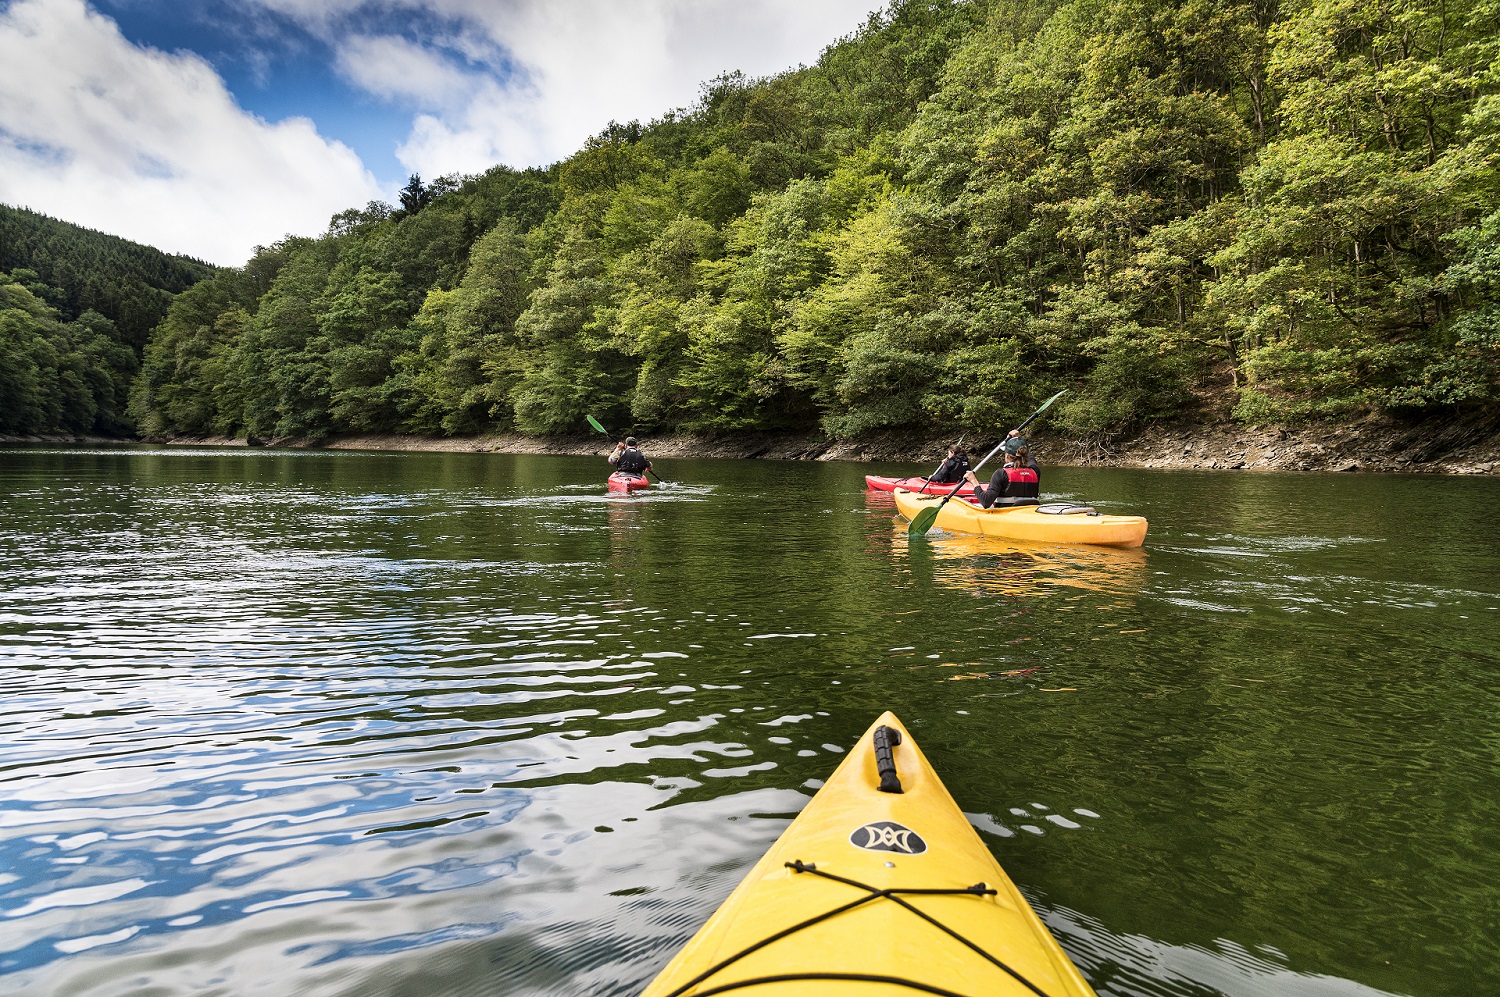 Insgesamt befinden sich vier Kayak-Fahrer auf dem Wasser, aus der Perspektive des hinteren Kayak-Fahrers aufgenommen. Am Ufer befinden sich viele Bäume.